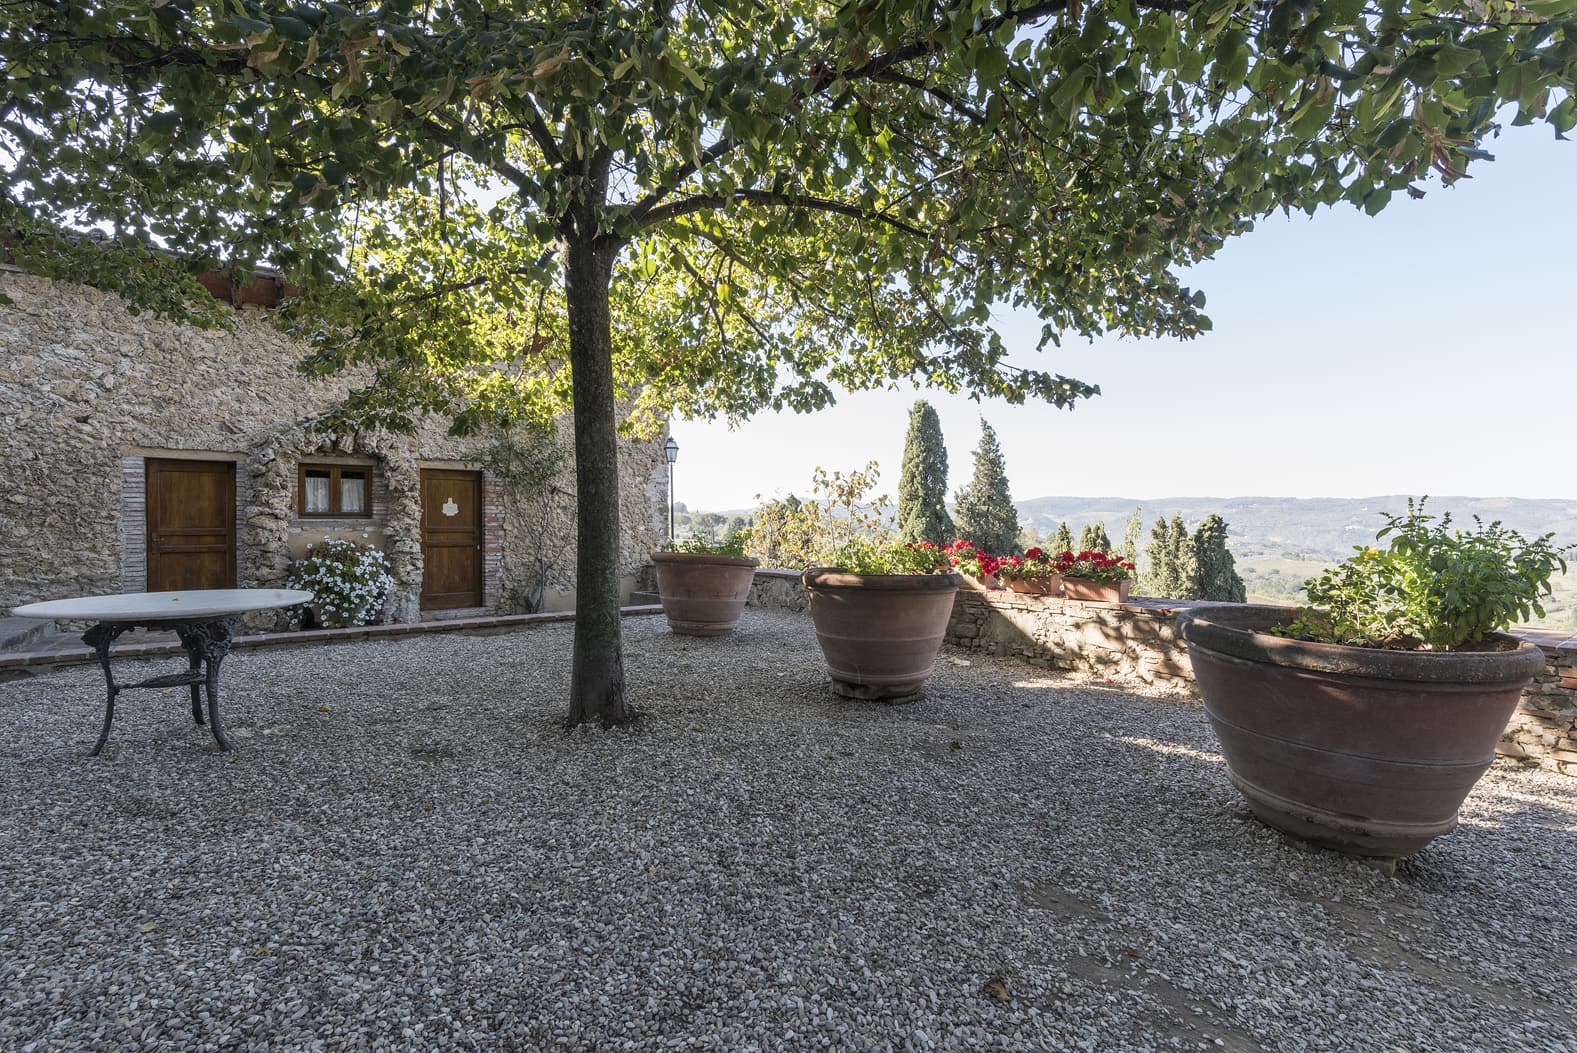  Bedroom Villa For Sale Borgo In Chianti Lp0793 710fff59ffc1c00.jpg